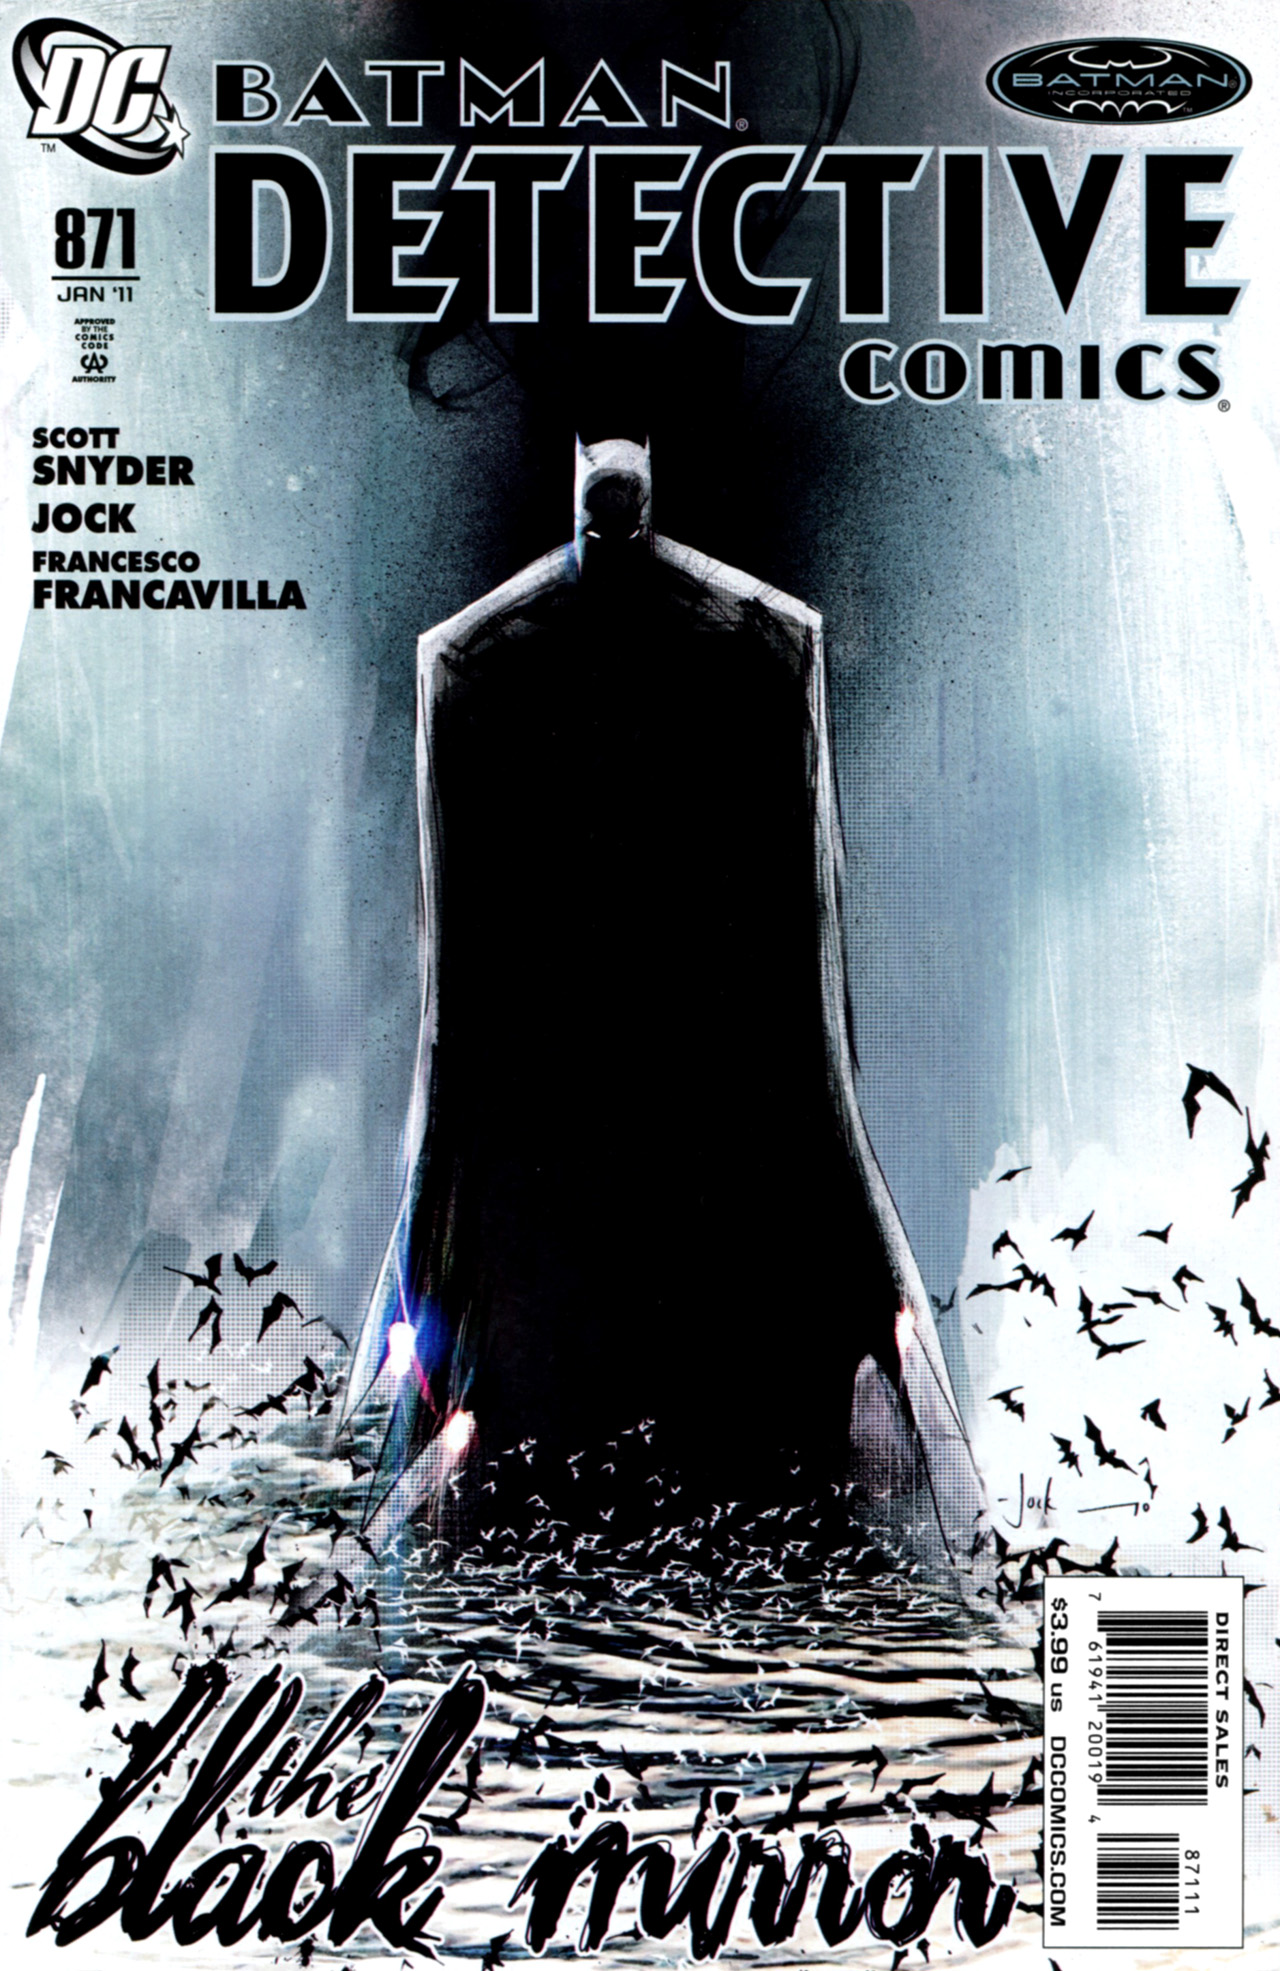 Detective Comics Vol. 1 #871A